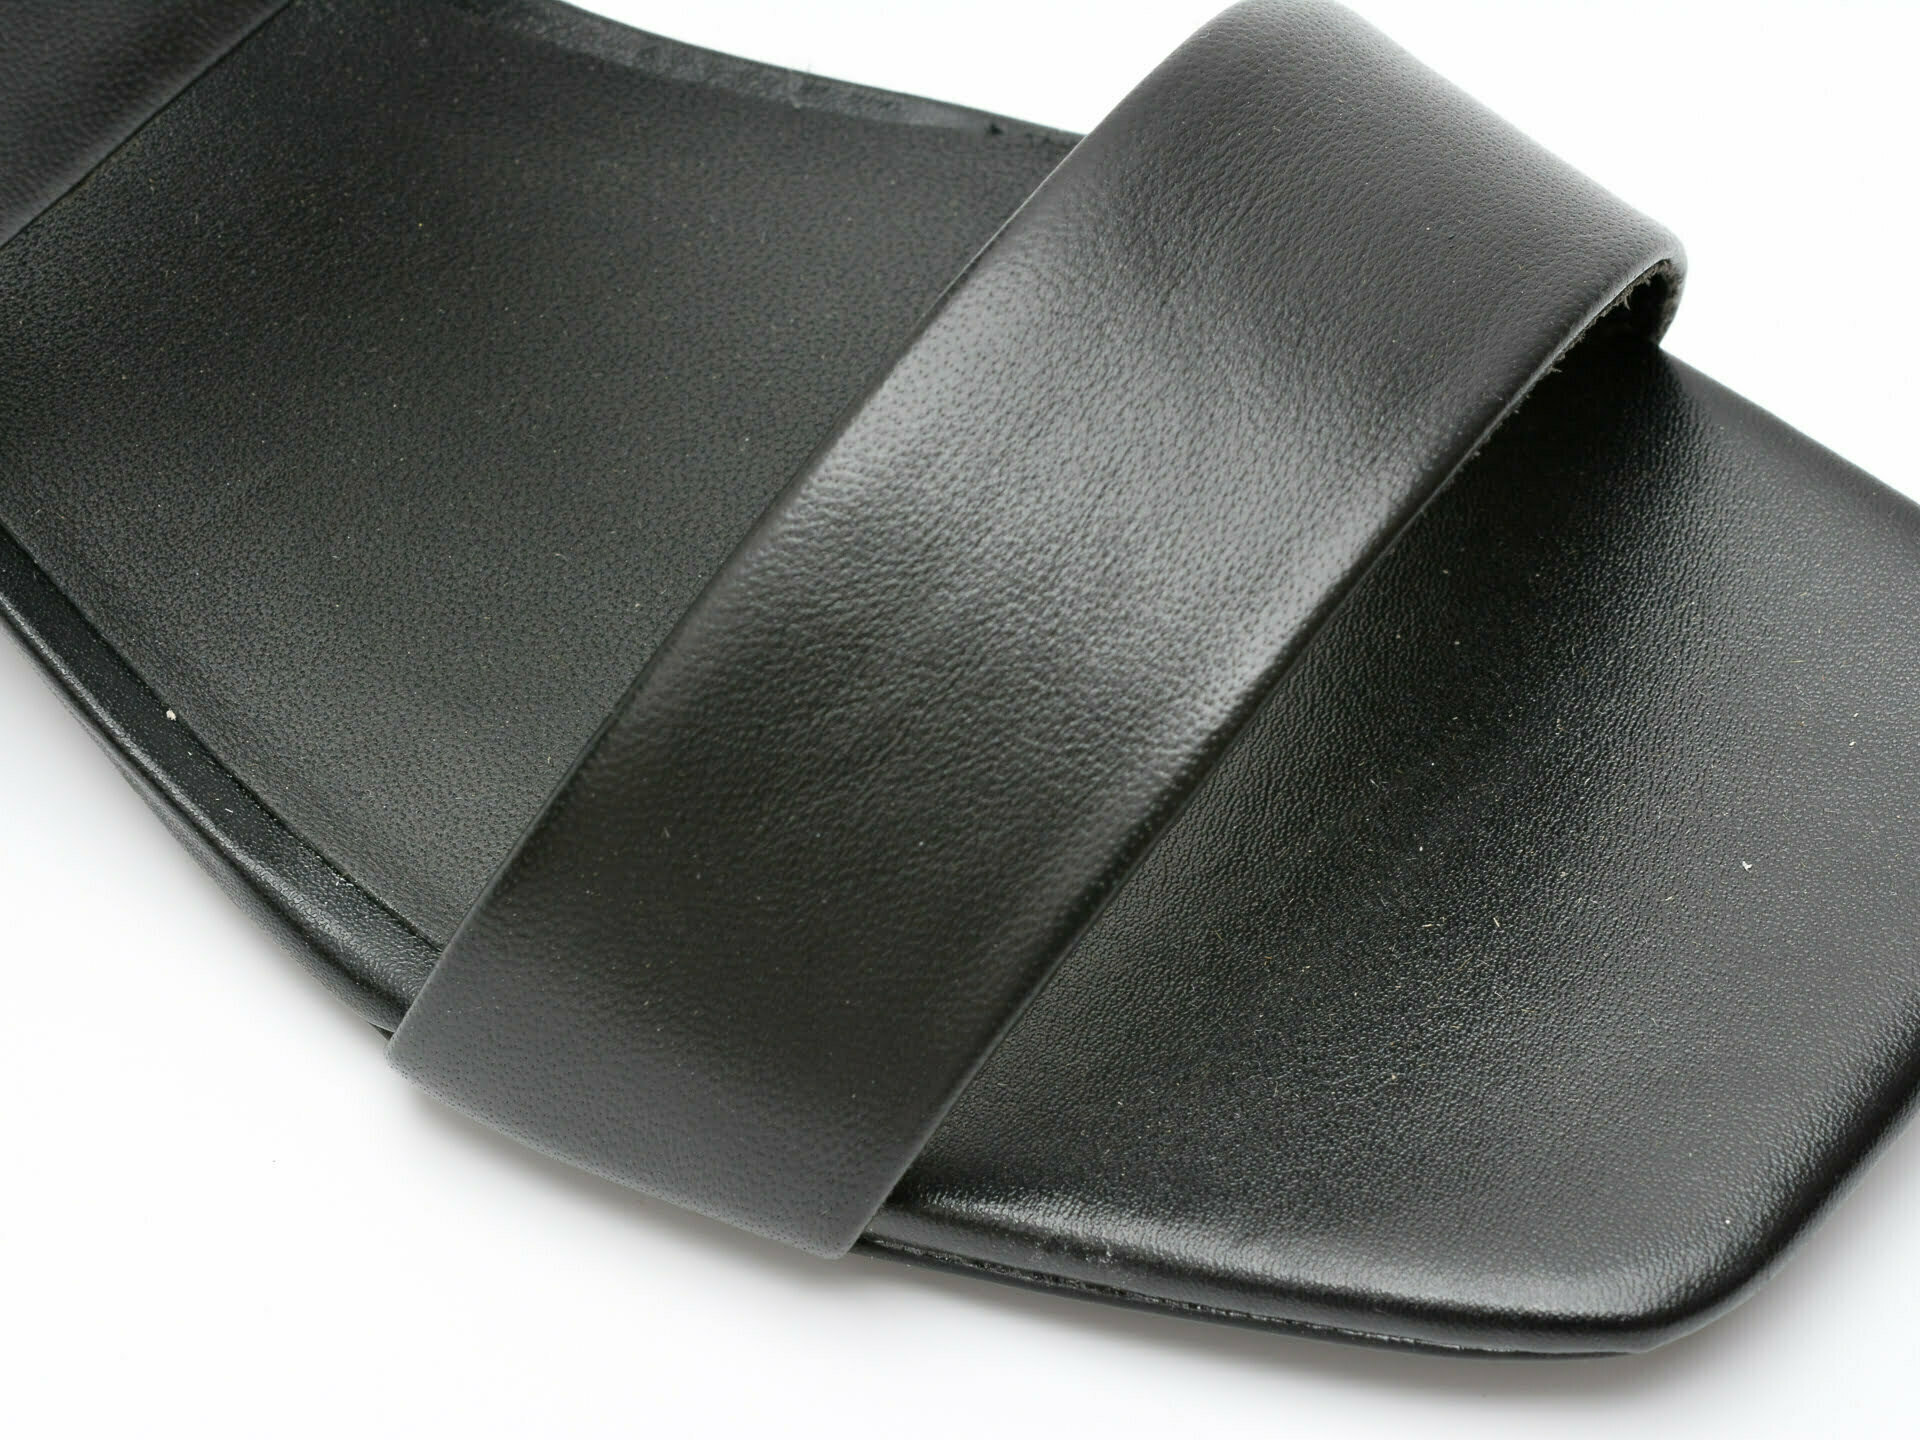 Comandă Încălțăminte Damă, la Reducere  Sandale CLARKS negre, SER25ST, din piele naturala Branduri de top ✓